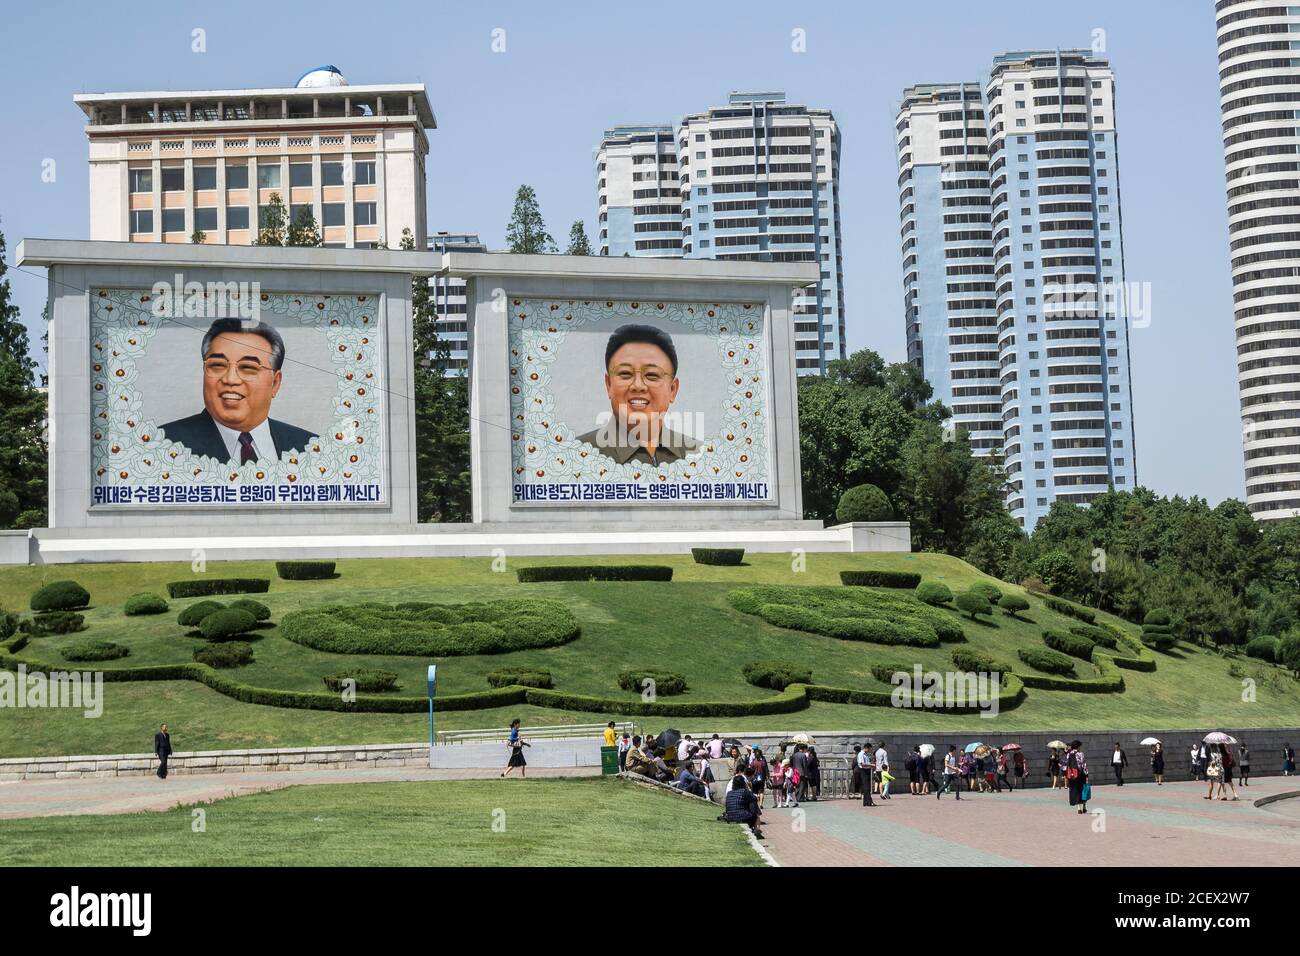 Corea del Nord nel centro di Pyongyang, dove i ritratti dei capi scomparsi, Kim il-cantato, a sinistra, e Kim Jong-il, sono visti sullo sfondo Foto Stock